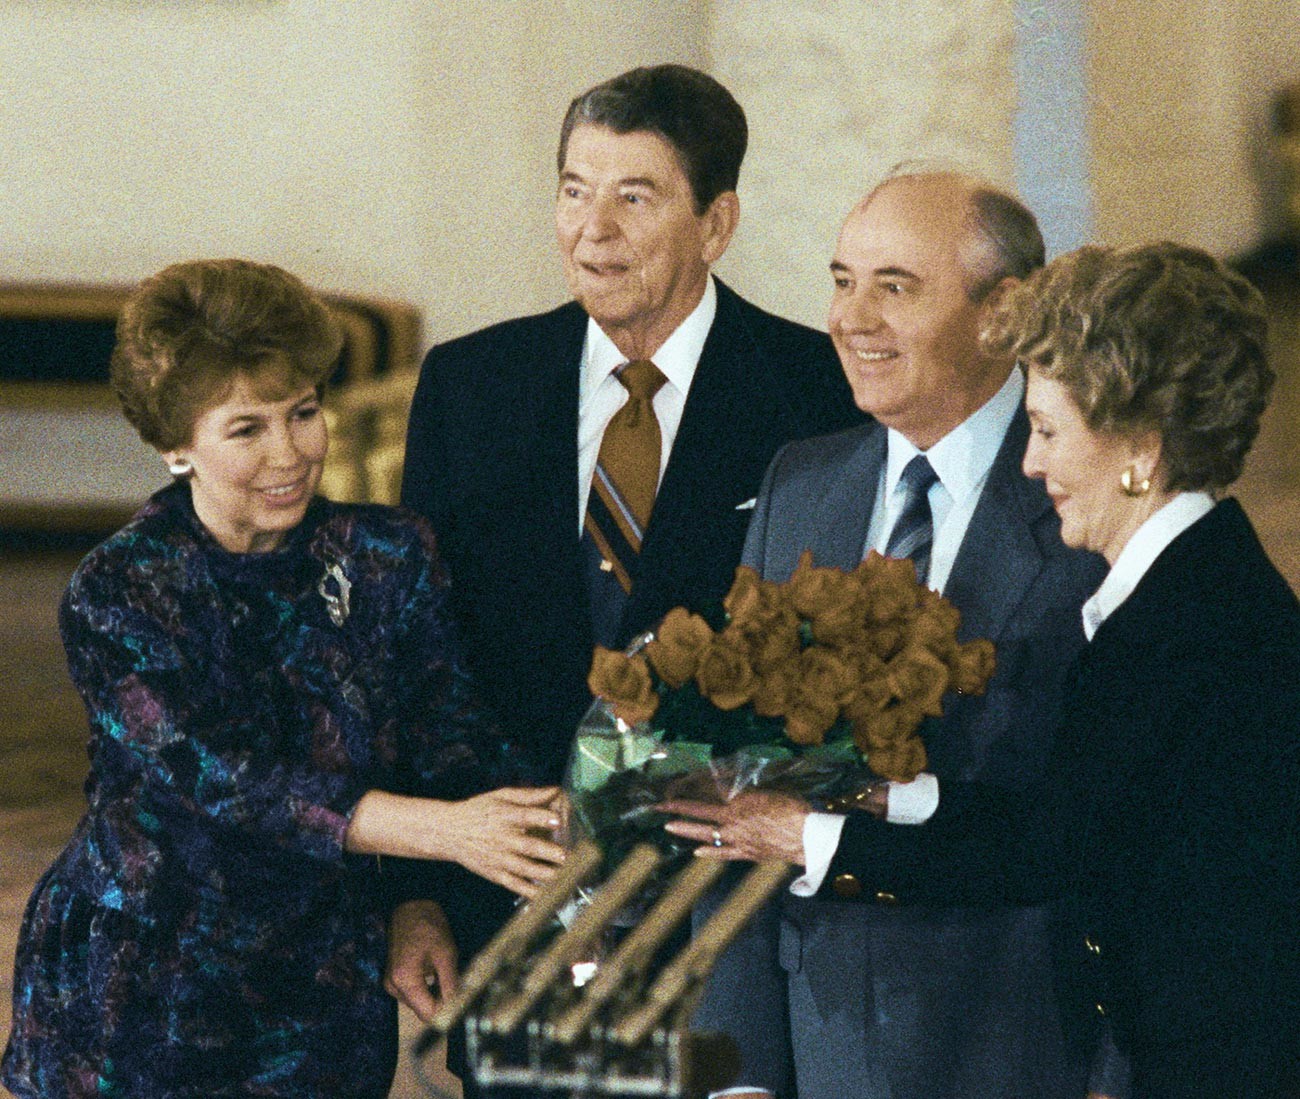 Il Segretario generale del PCUS Mikhail Gorbachev (il secondo da destra) e il presidente USA Ronald Reagan (al centro) insieme alle rispettive consorti durante un incontro al Cremlino, in occasione di una visita ufficiale di Reagan in URSS, 1988